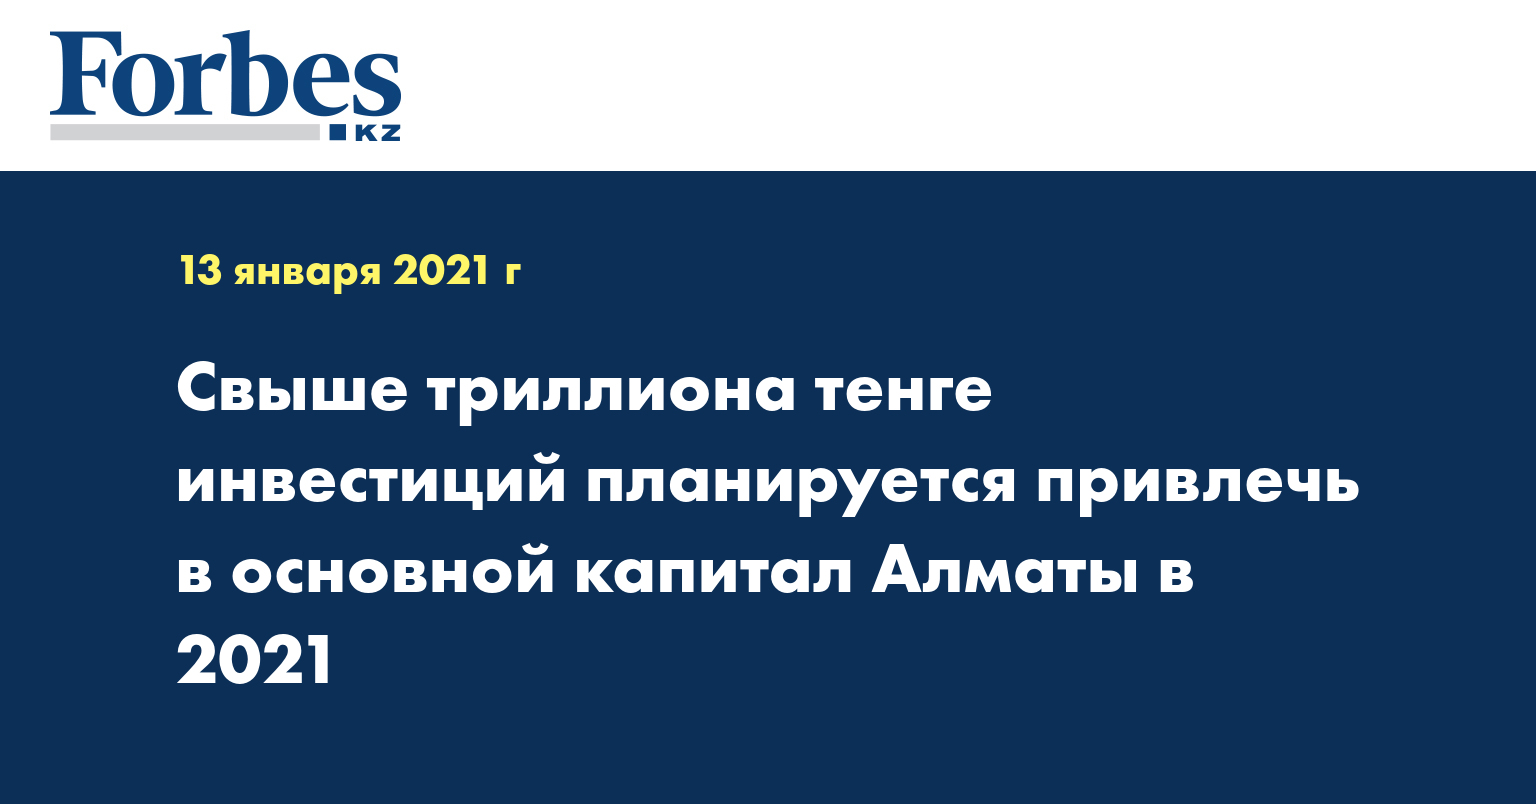 Свыше триллиона тенге инвестиций планируется привлечь в основной капитал Алматы в 2021